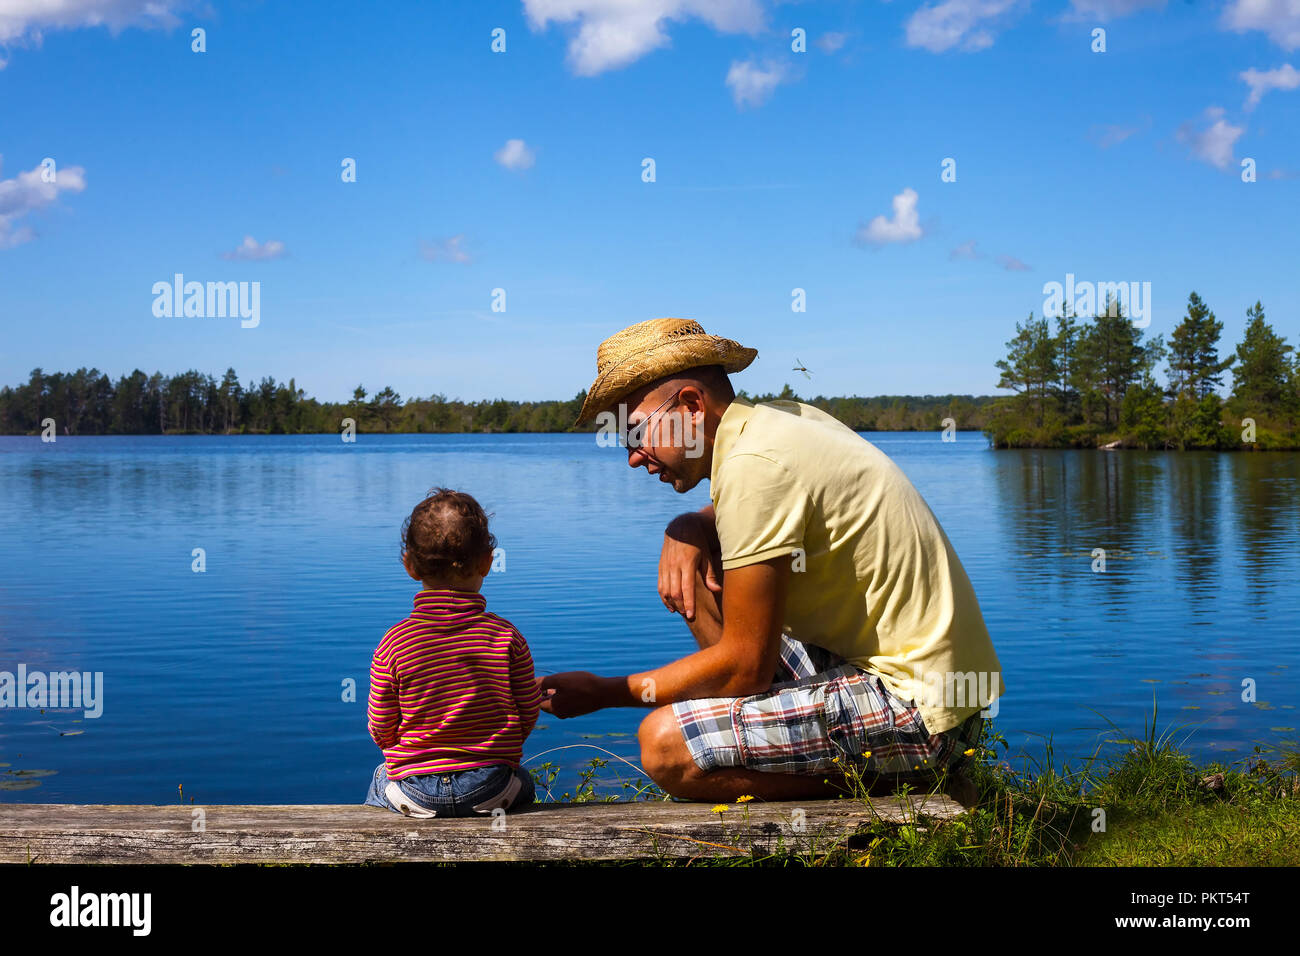 Vater und Kind am See - Begriff der Vaterschaft Stockfoto